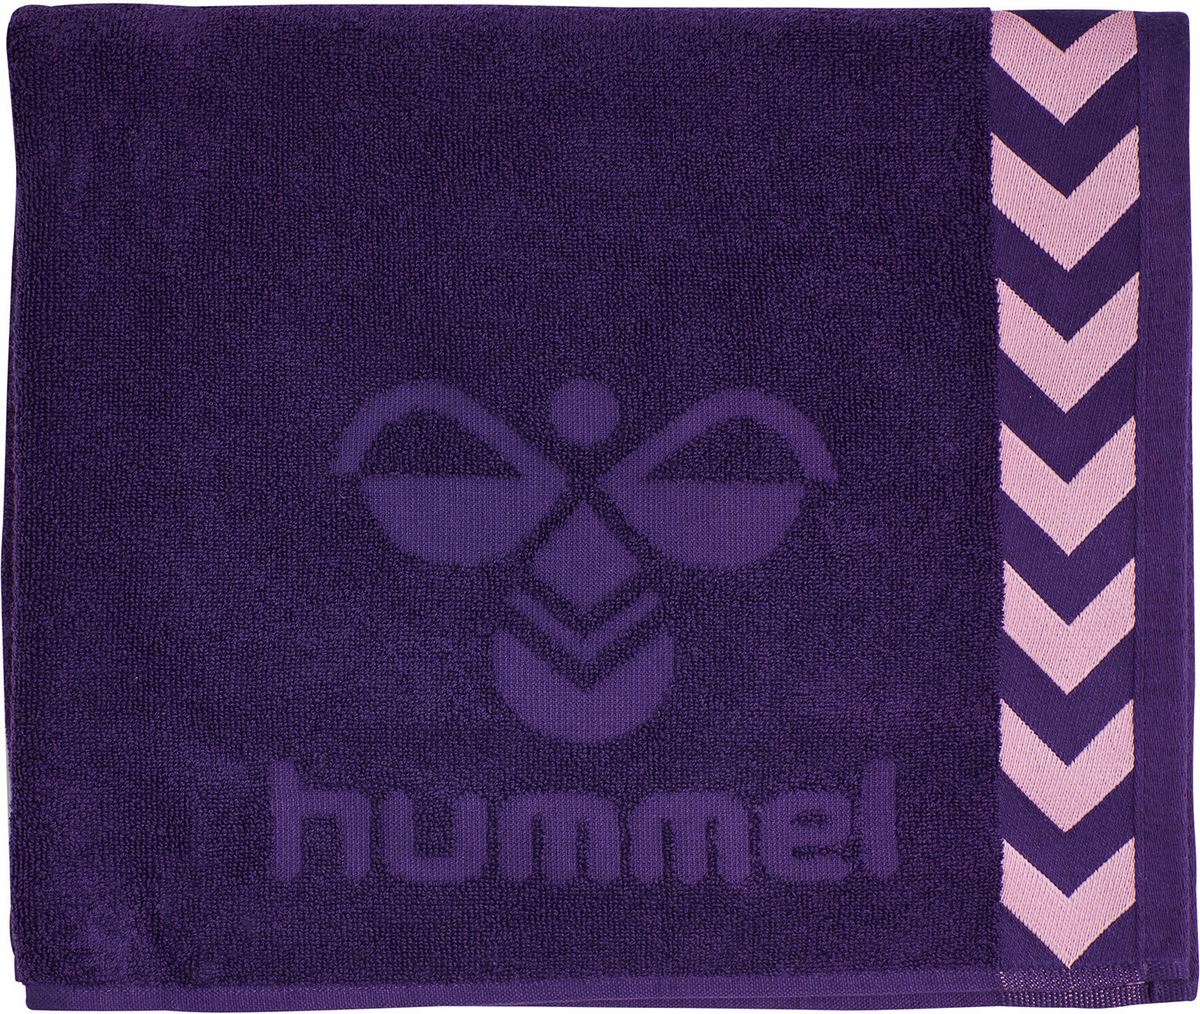 HUMMEL PETITE SERVIETTE 100x50 cm - Acai